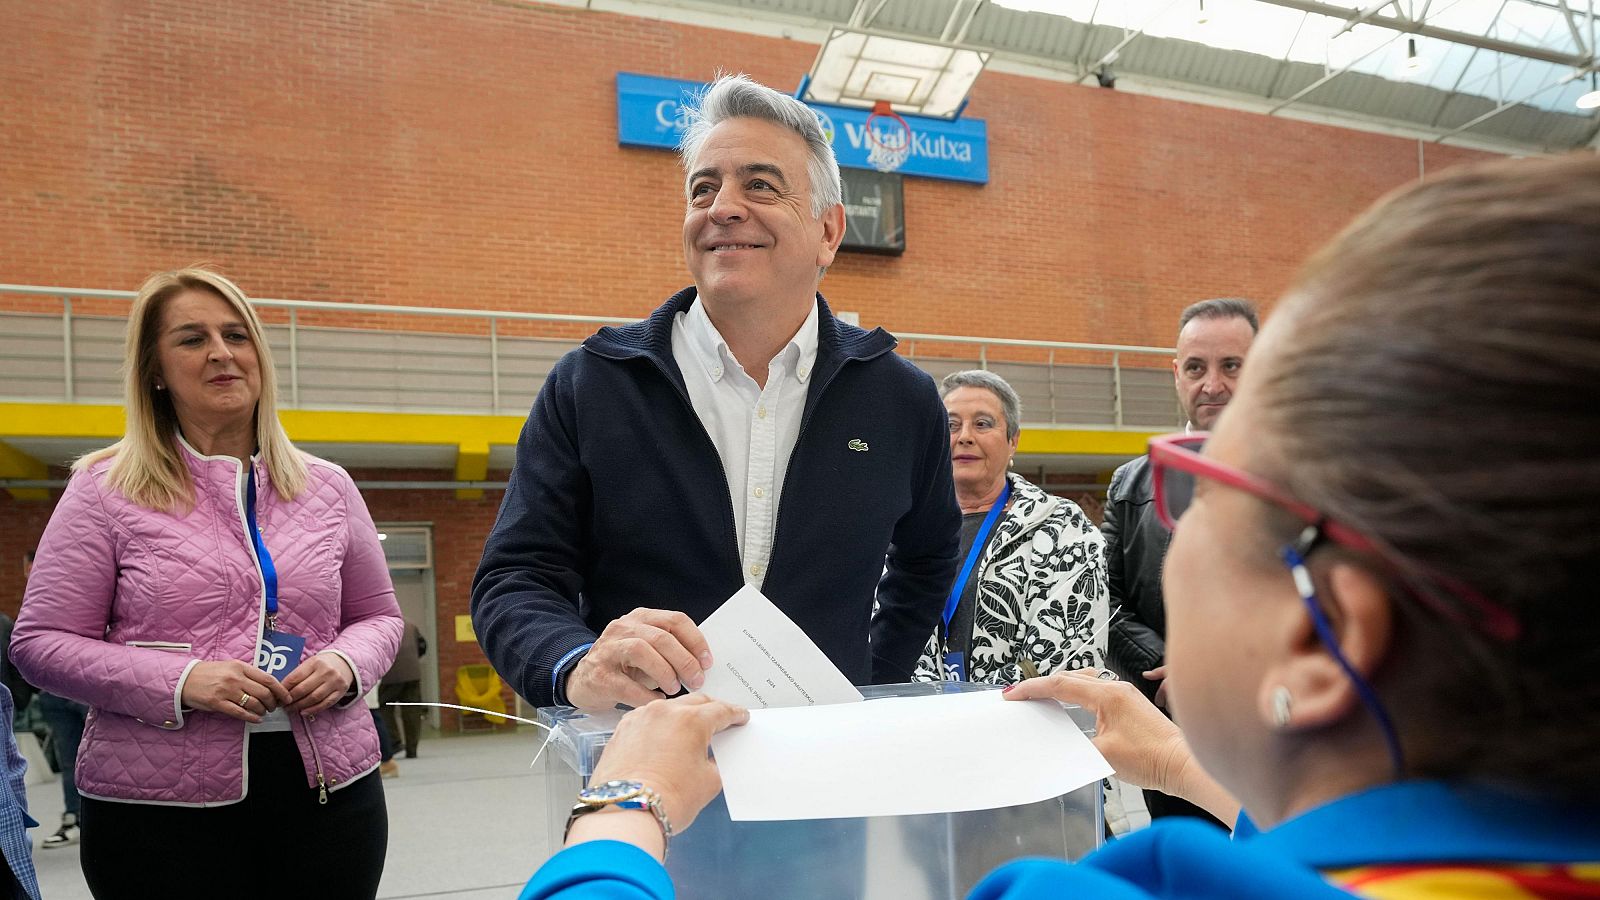 Javier de Andrés (PP) vota en Vitoria: "Confiamos en ser decisivos la próxima legislatura"